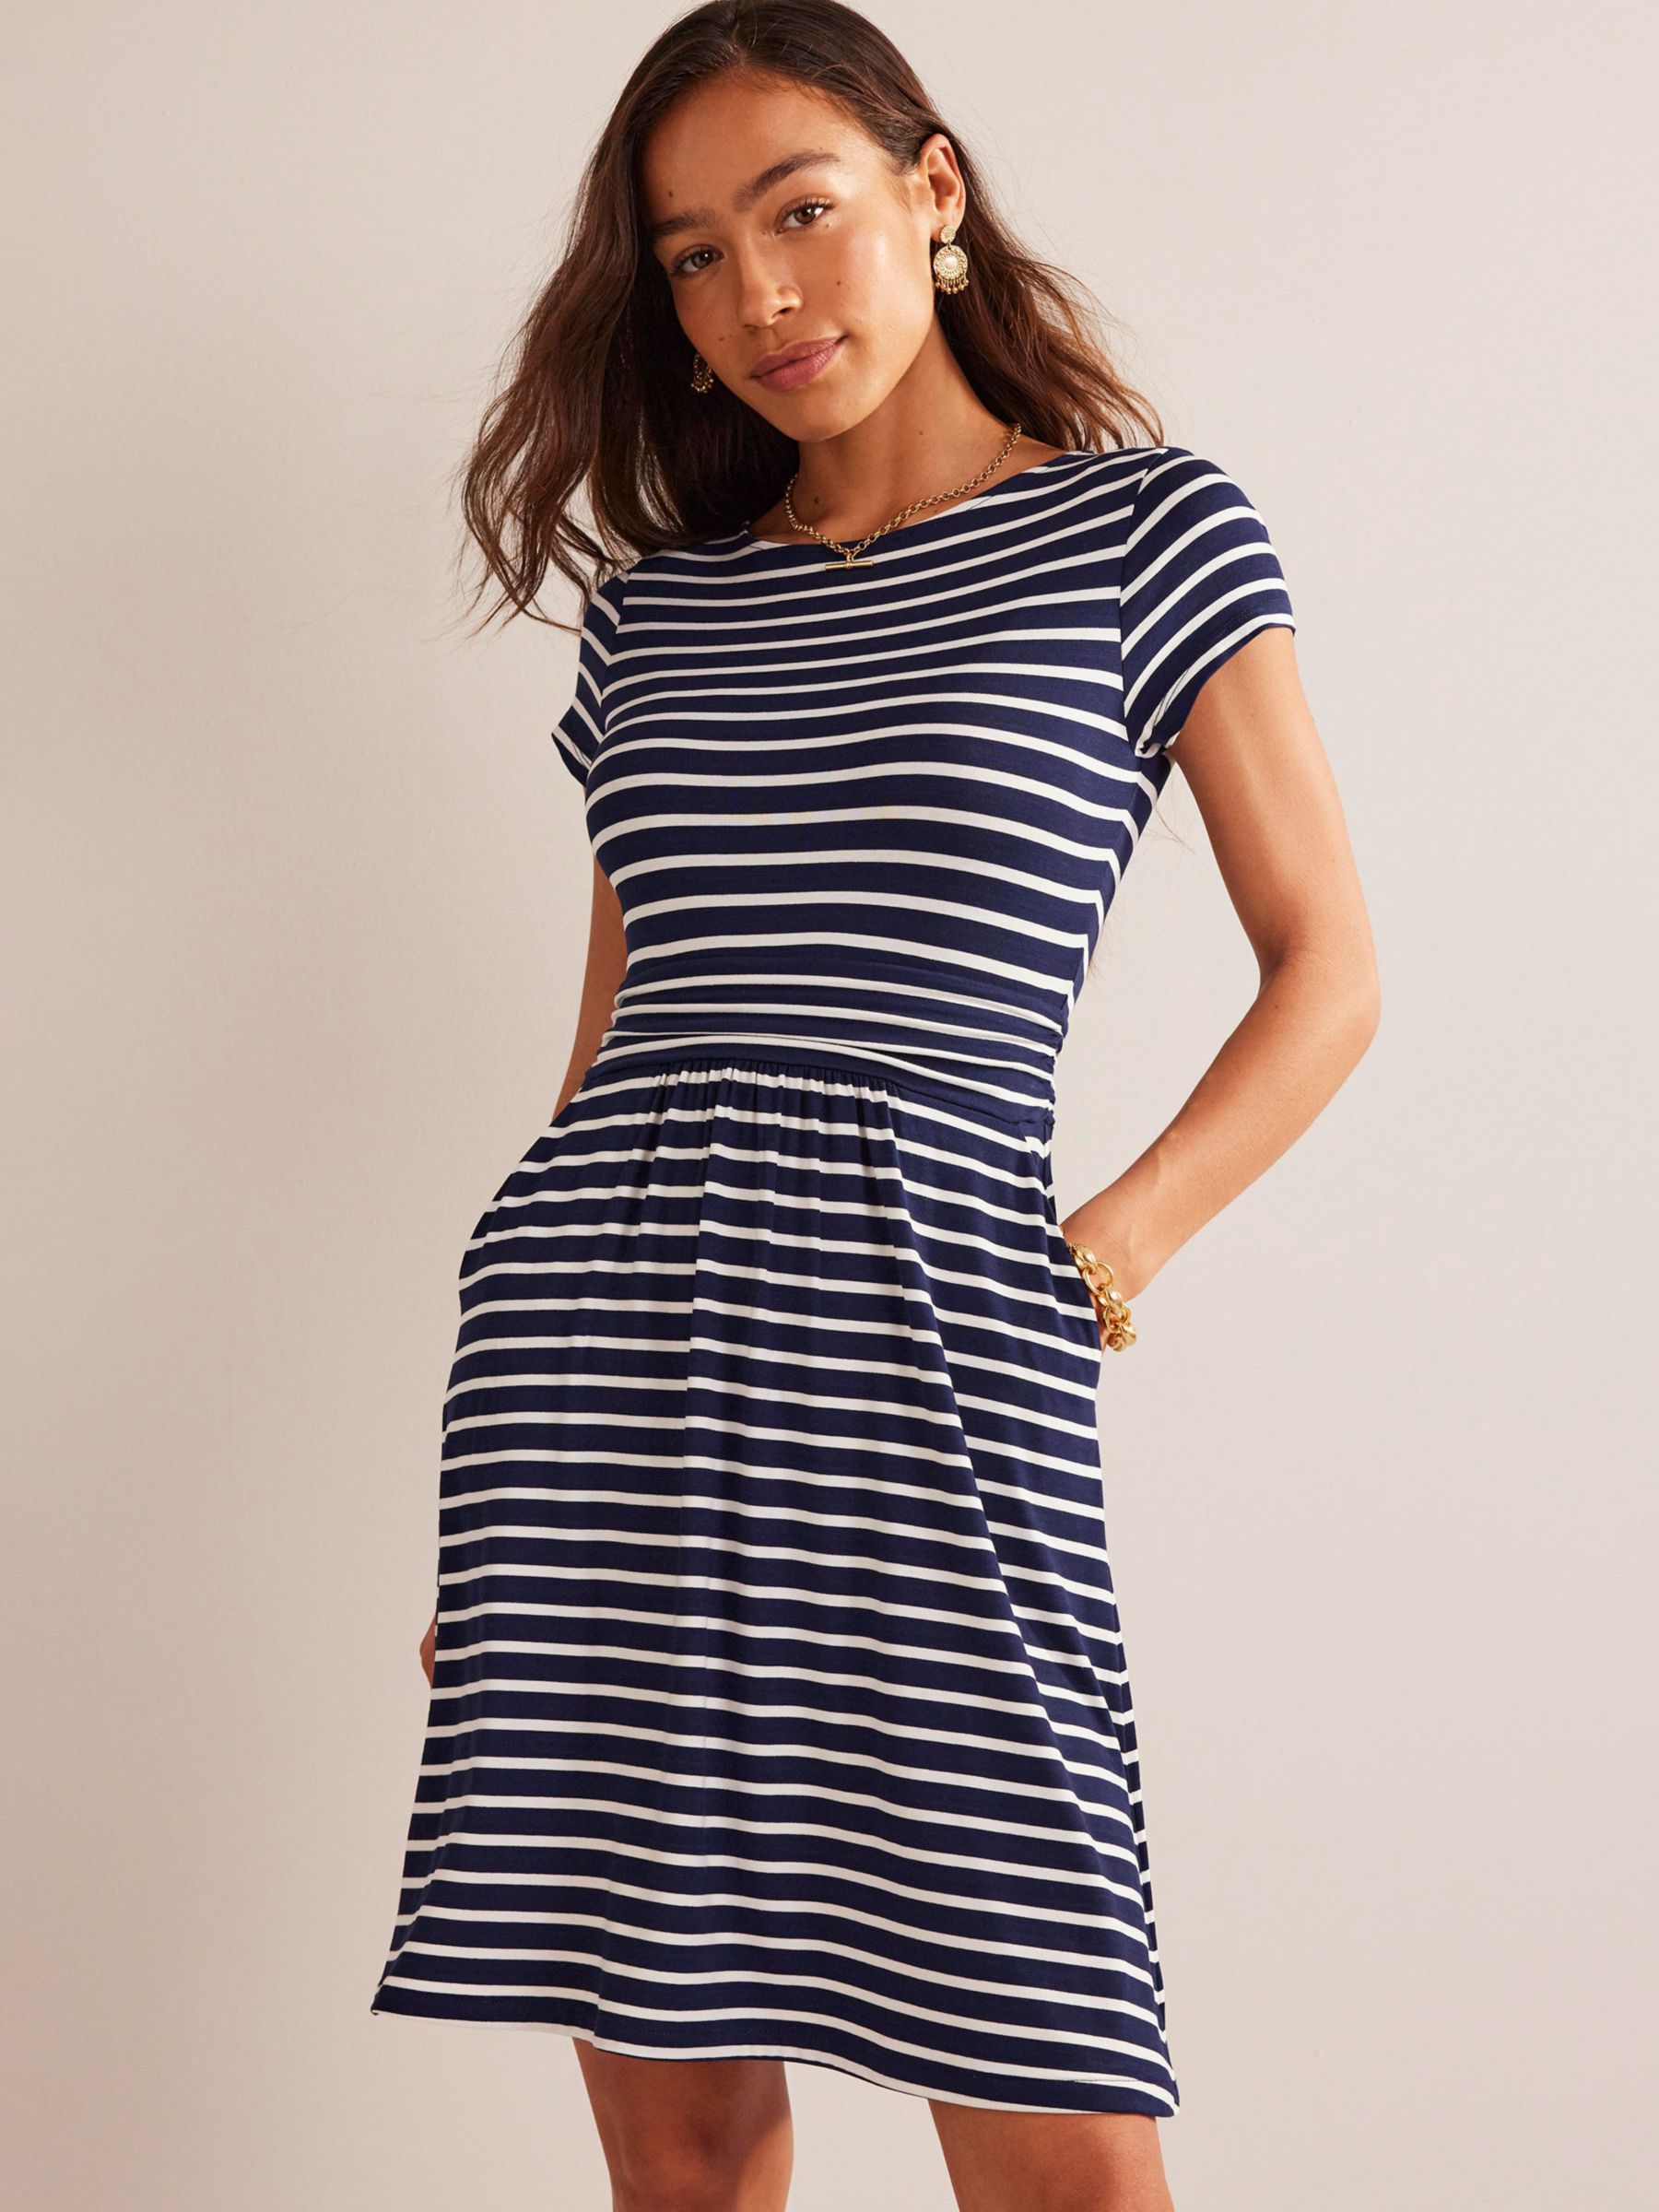 Boden Amelie Stripe Jersey Dress, Navy/Ivory, 8